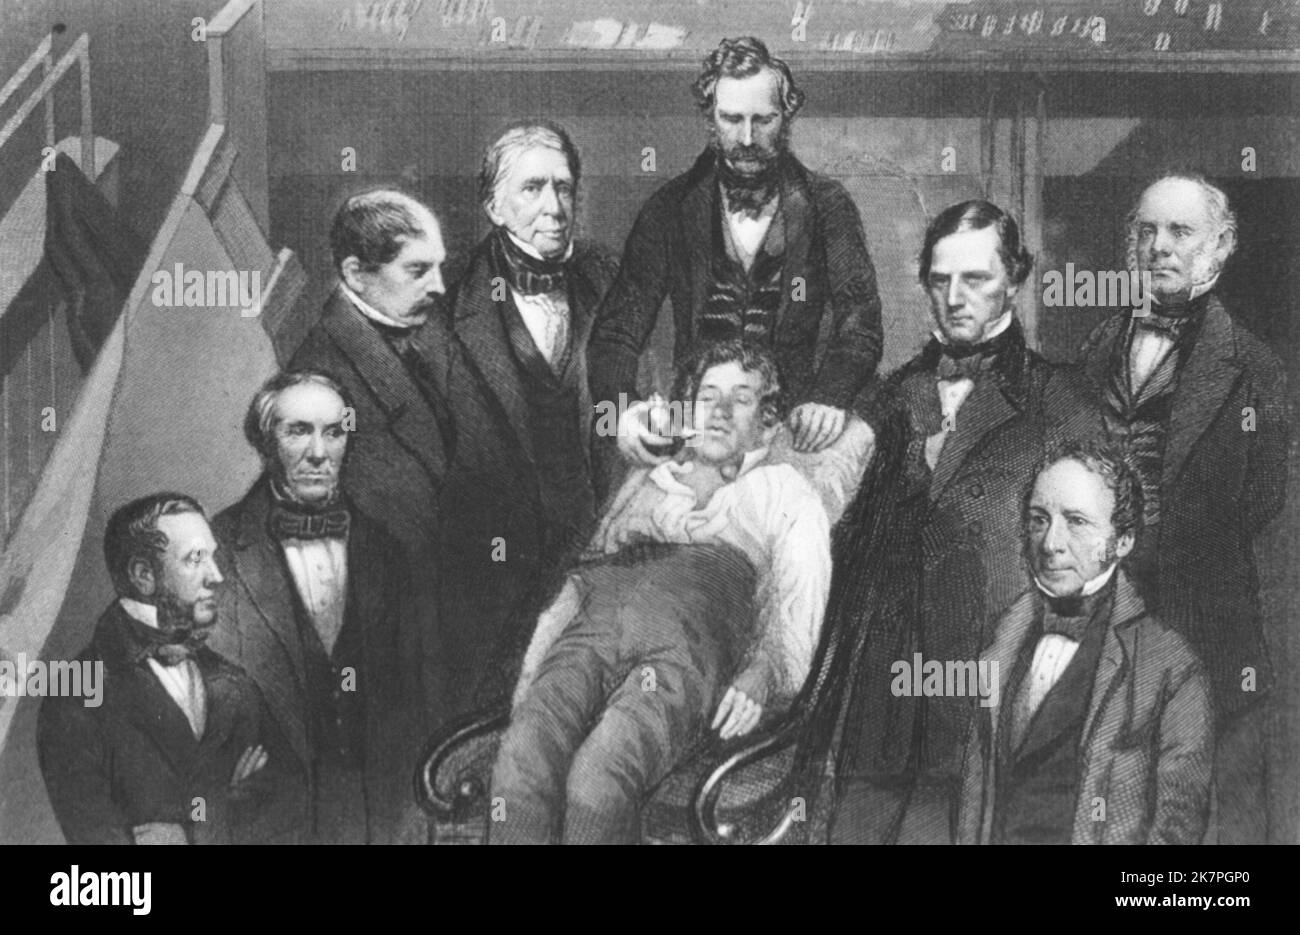 William Thomas Green Morton (1819 – 1868) amerikanischer Zahnarzt und Arzt, der 1846 erstmals öffentlich den Einsatz von inhaliertem Äther als Operationsanest demonstrierte. William T.G. Morton, M.D. Boston, die erste öffentliche Demonstration der Ätherisierung, umgeben von medizinischem Personal. Von links nach rechts: 1. Dr. Henry J. Bigelow; 2. Dr. Augustus A. Gould; 3. Dr. J. Mason Warren; 4. Dr. John C. Warren; 5. Dr. William T. G. Morton; 6. Dr. Samuel Parkman; 7. Dr. George Hayward; 8. Dr. T. D. Townsend. Stockfoto